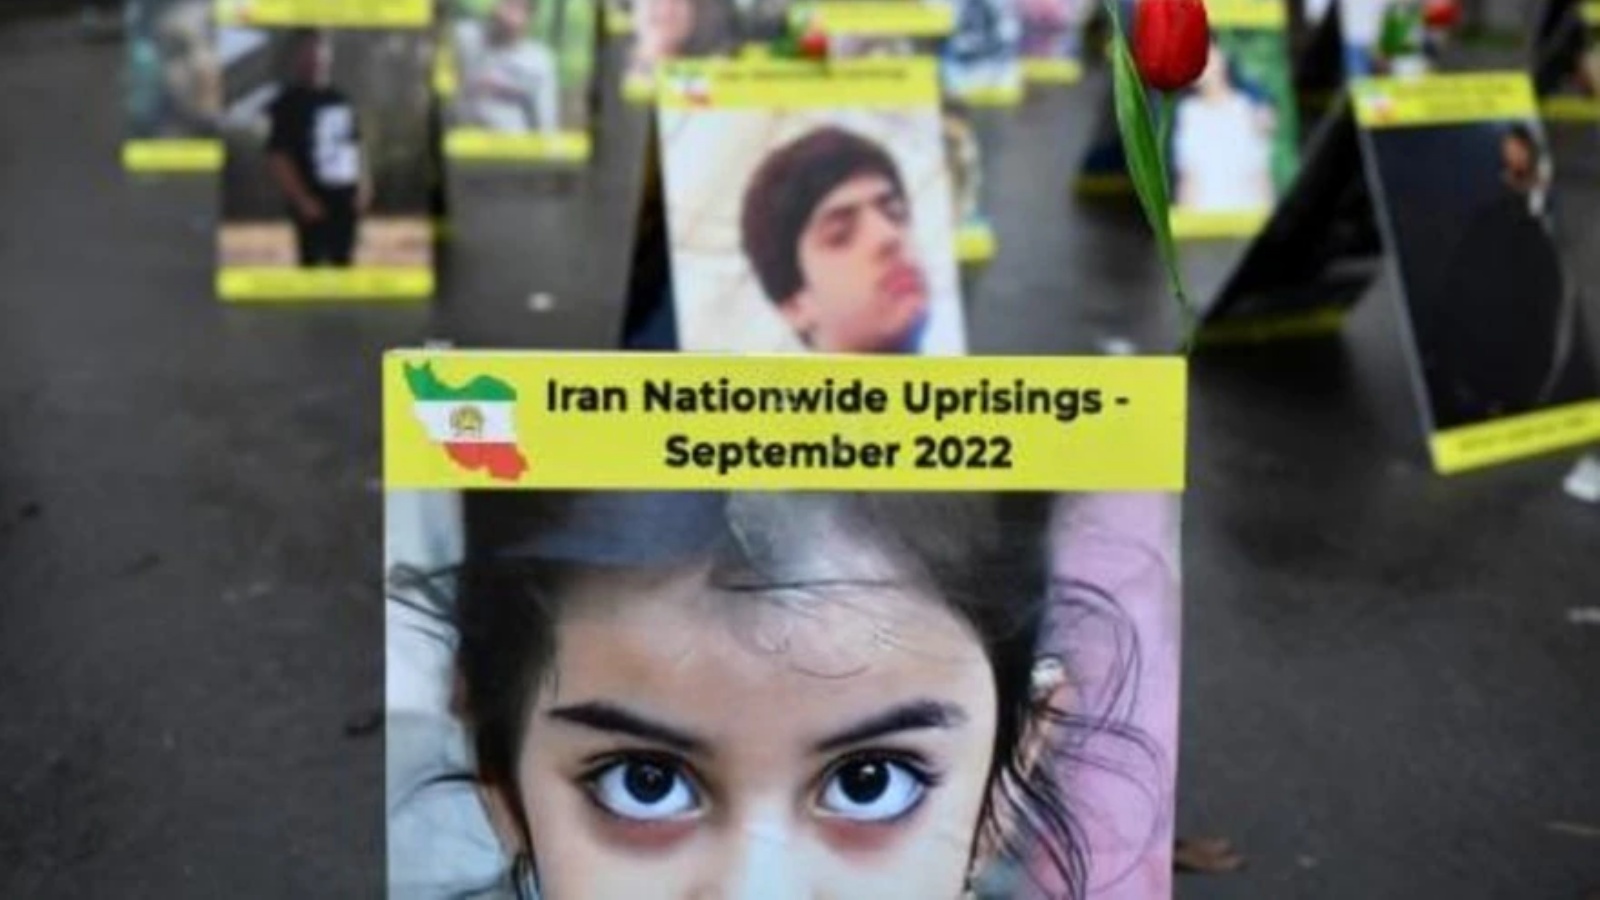 صورة التقطت قرب الجمعية الوطنية الفرنسية في باريس في 6 كانون الأول/ديسمبر تظهر لافتات عليها صور ضحايا حملة القمع في إيران